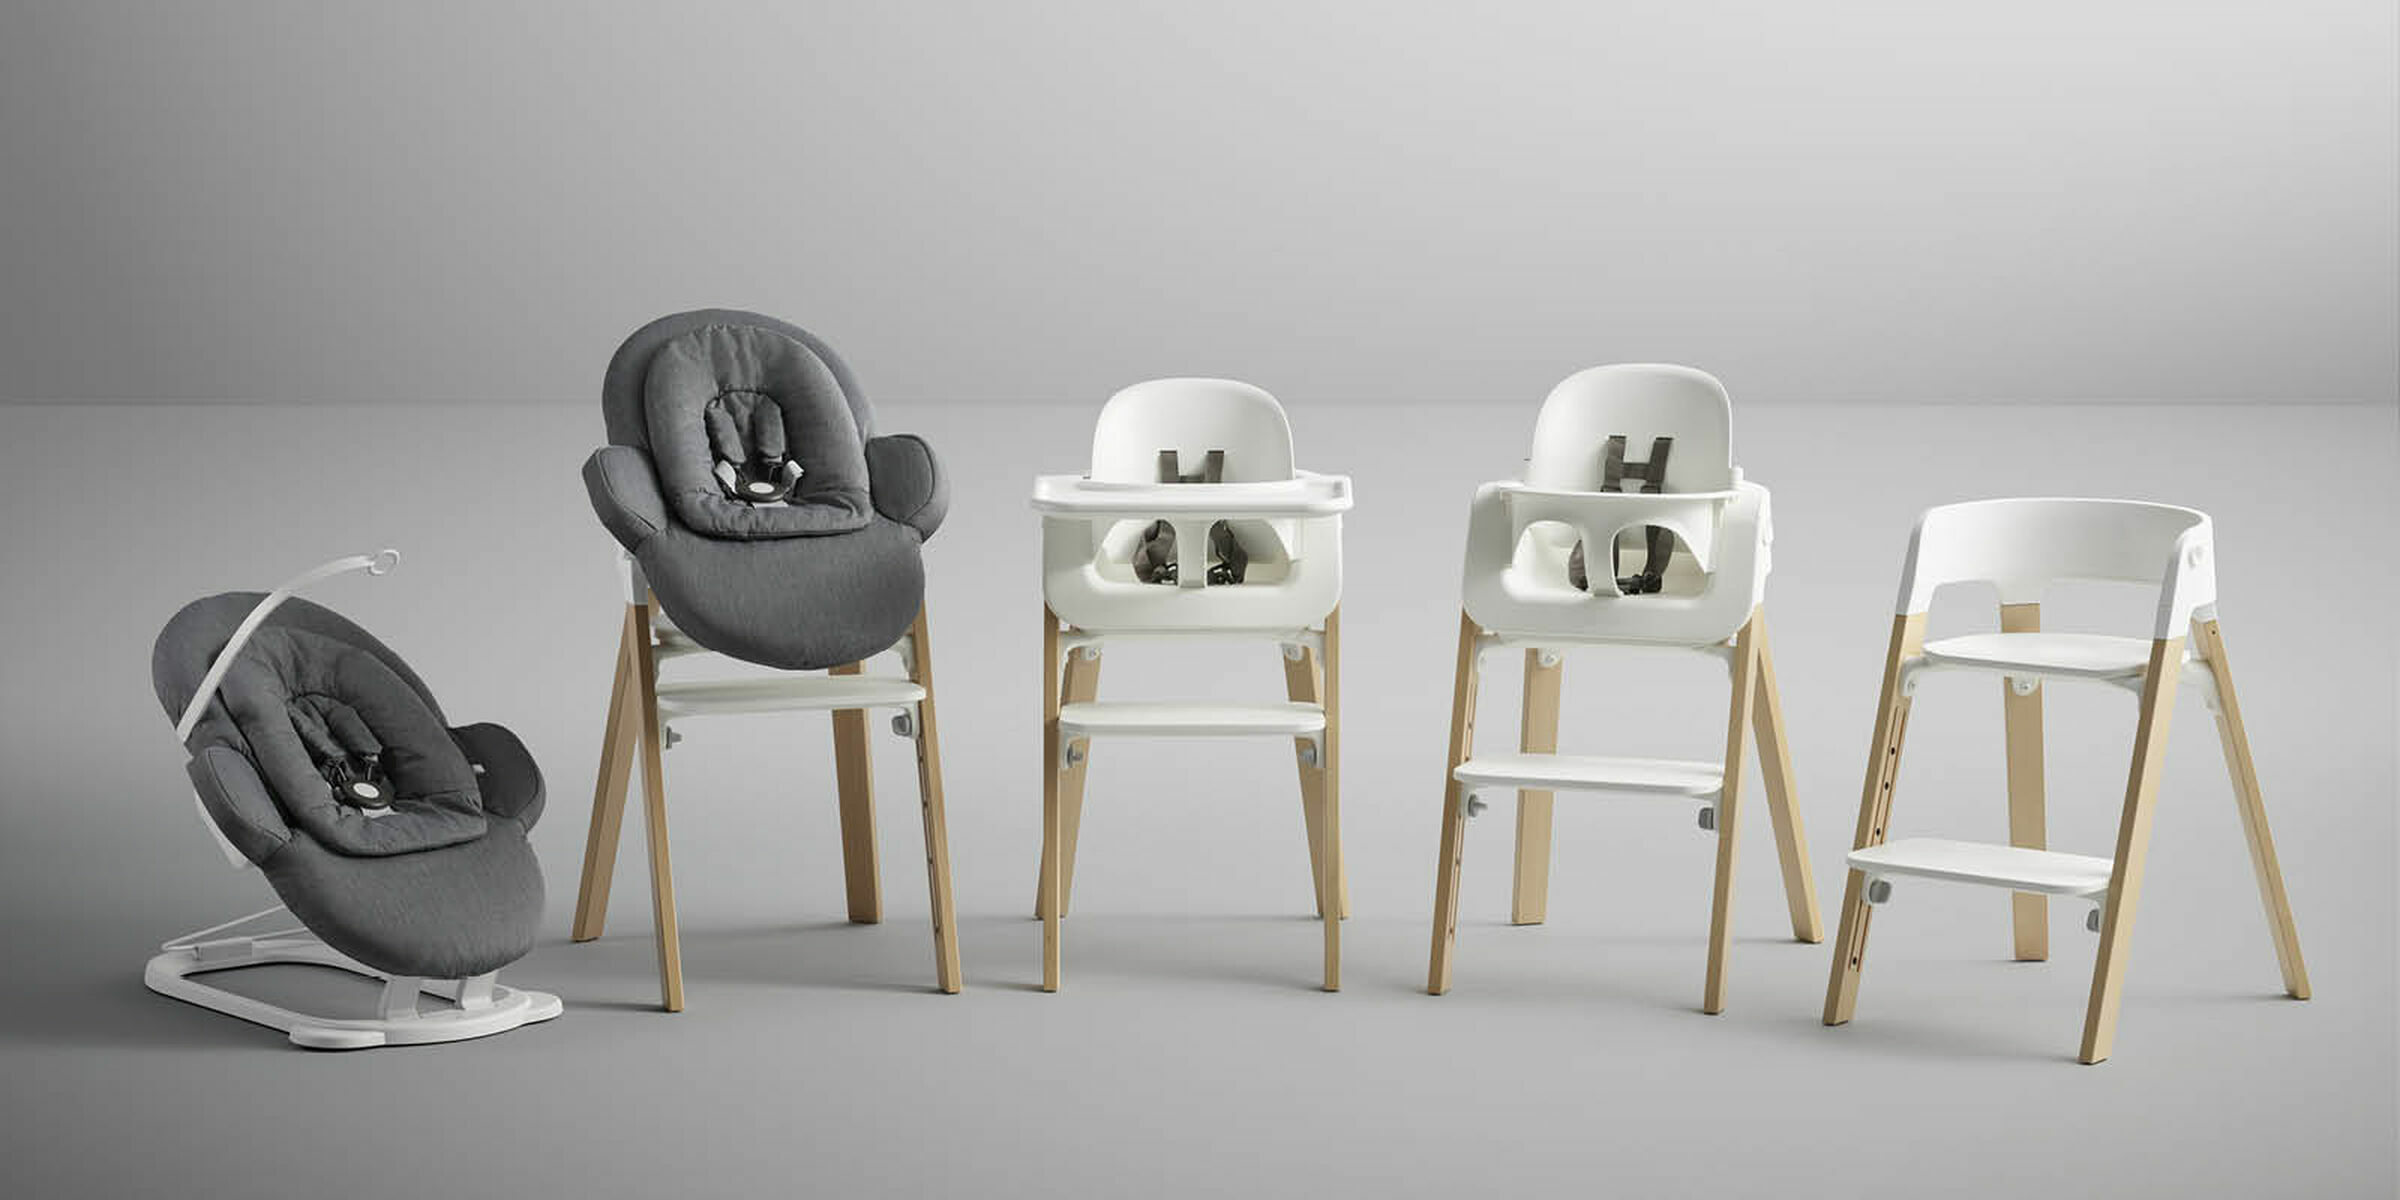 成長型嬰兒餐椅-5in1 Seating System-Stokke Steps